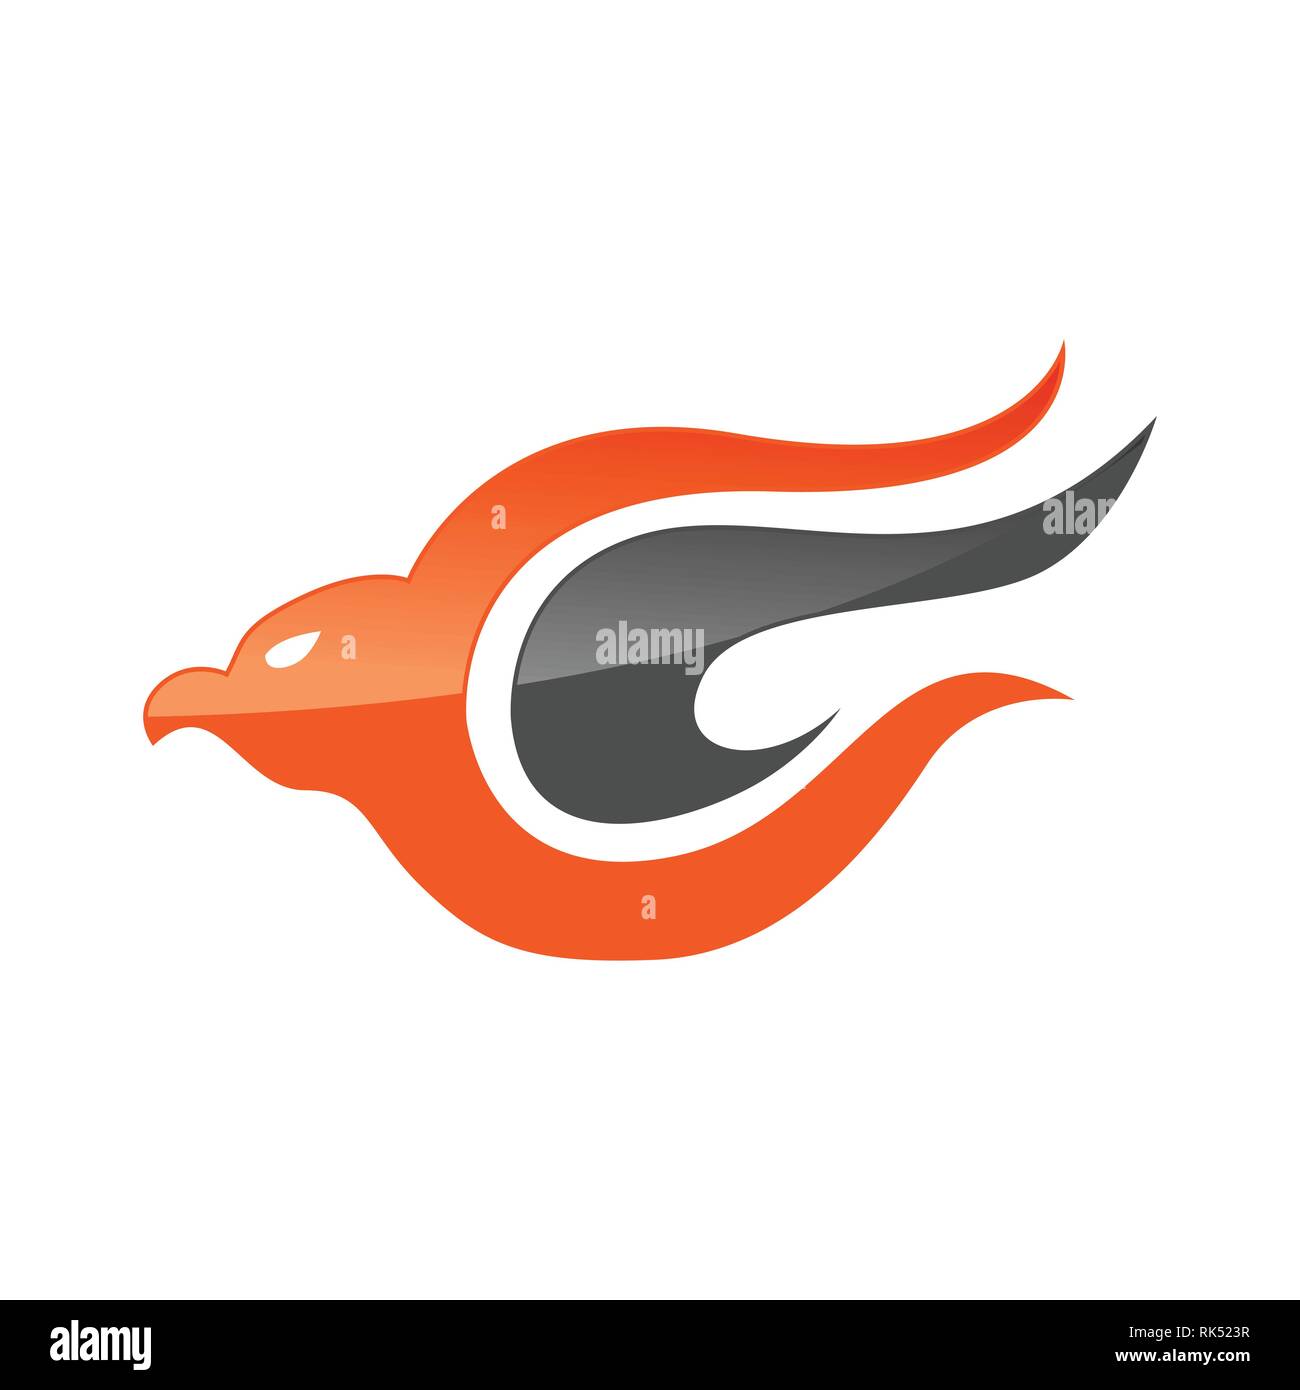 Abstrakte Adler Vogel oder Fantasy eagle logo Vorlage für Sicherheit oder Airlines Company Stock Vektor